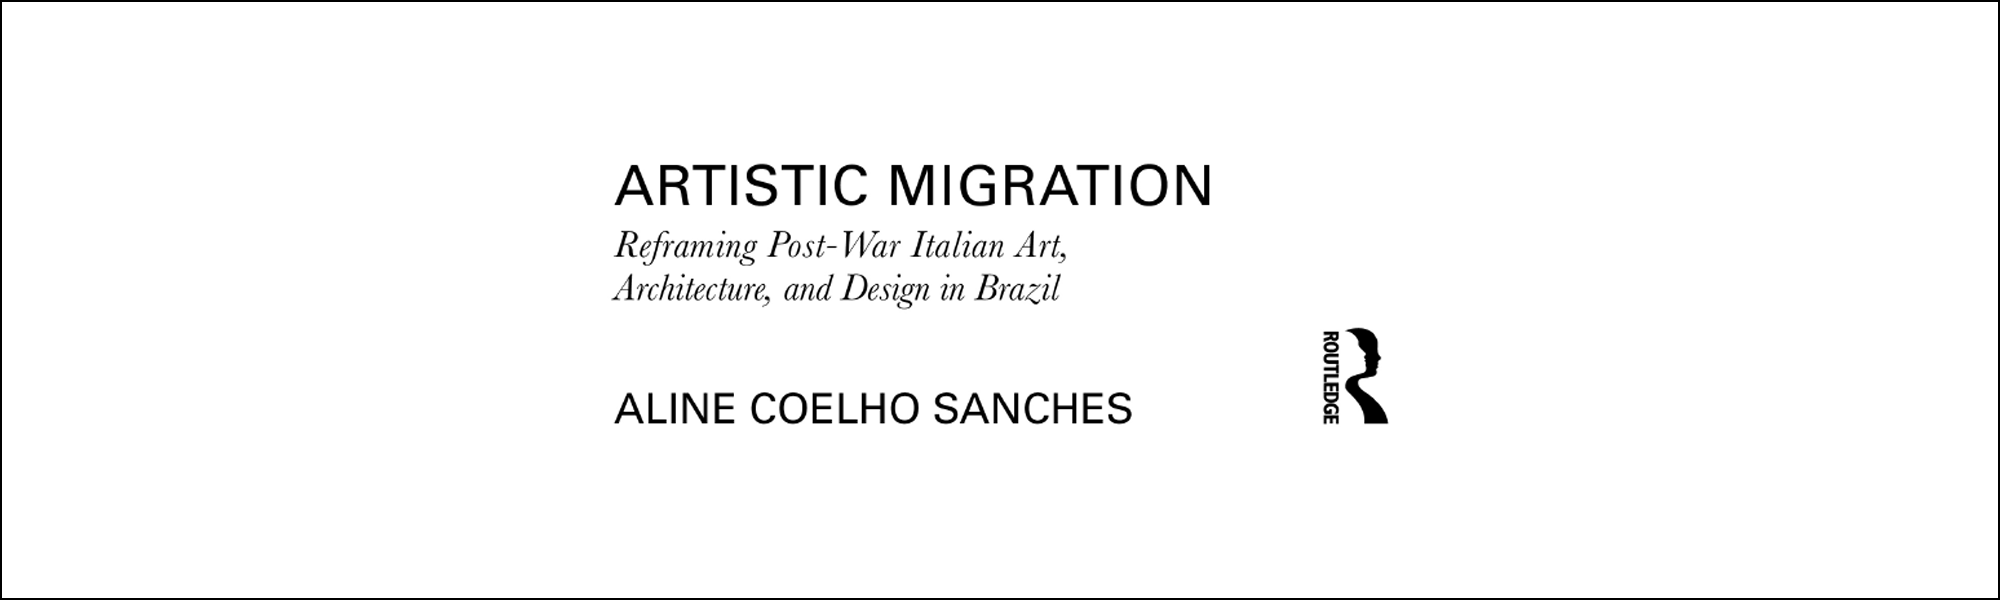 Docente do IAU publica livro sobre reenquadramento da arte e arquitetura italianas no pós-guerra no Brasil